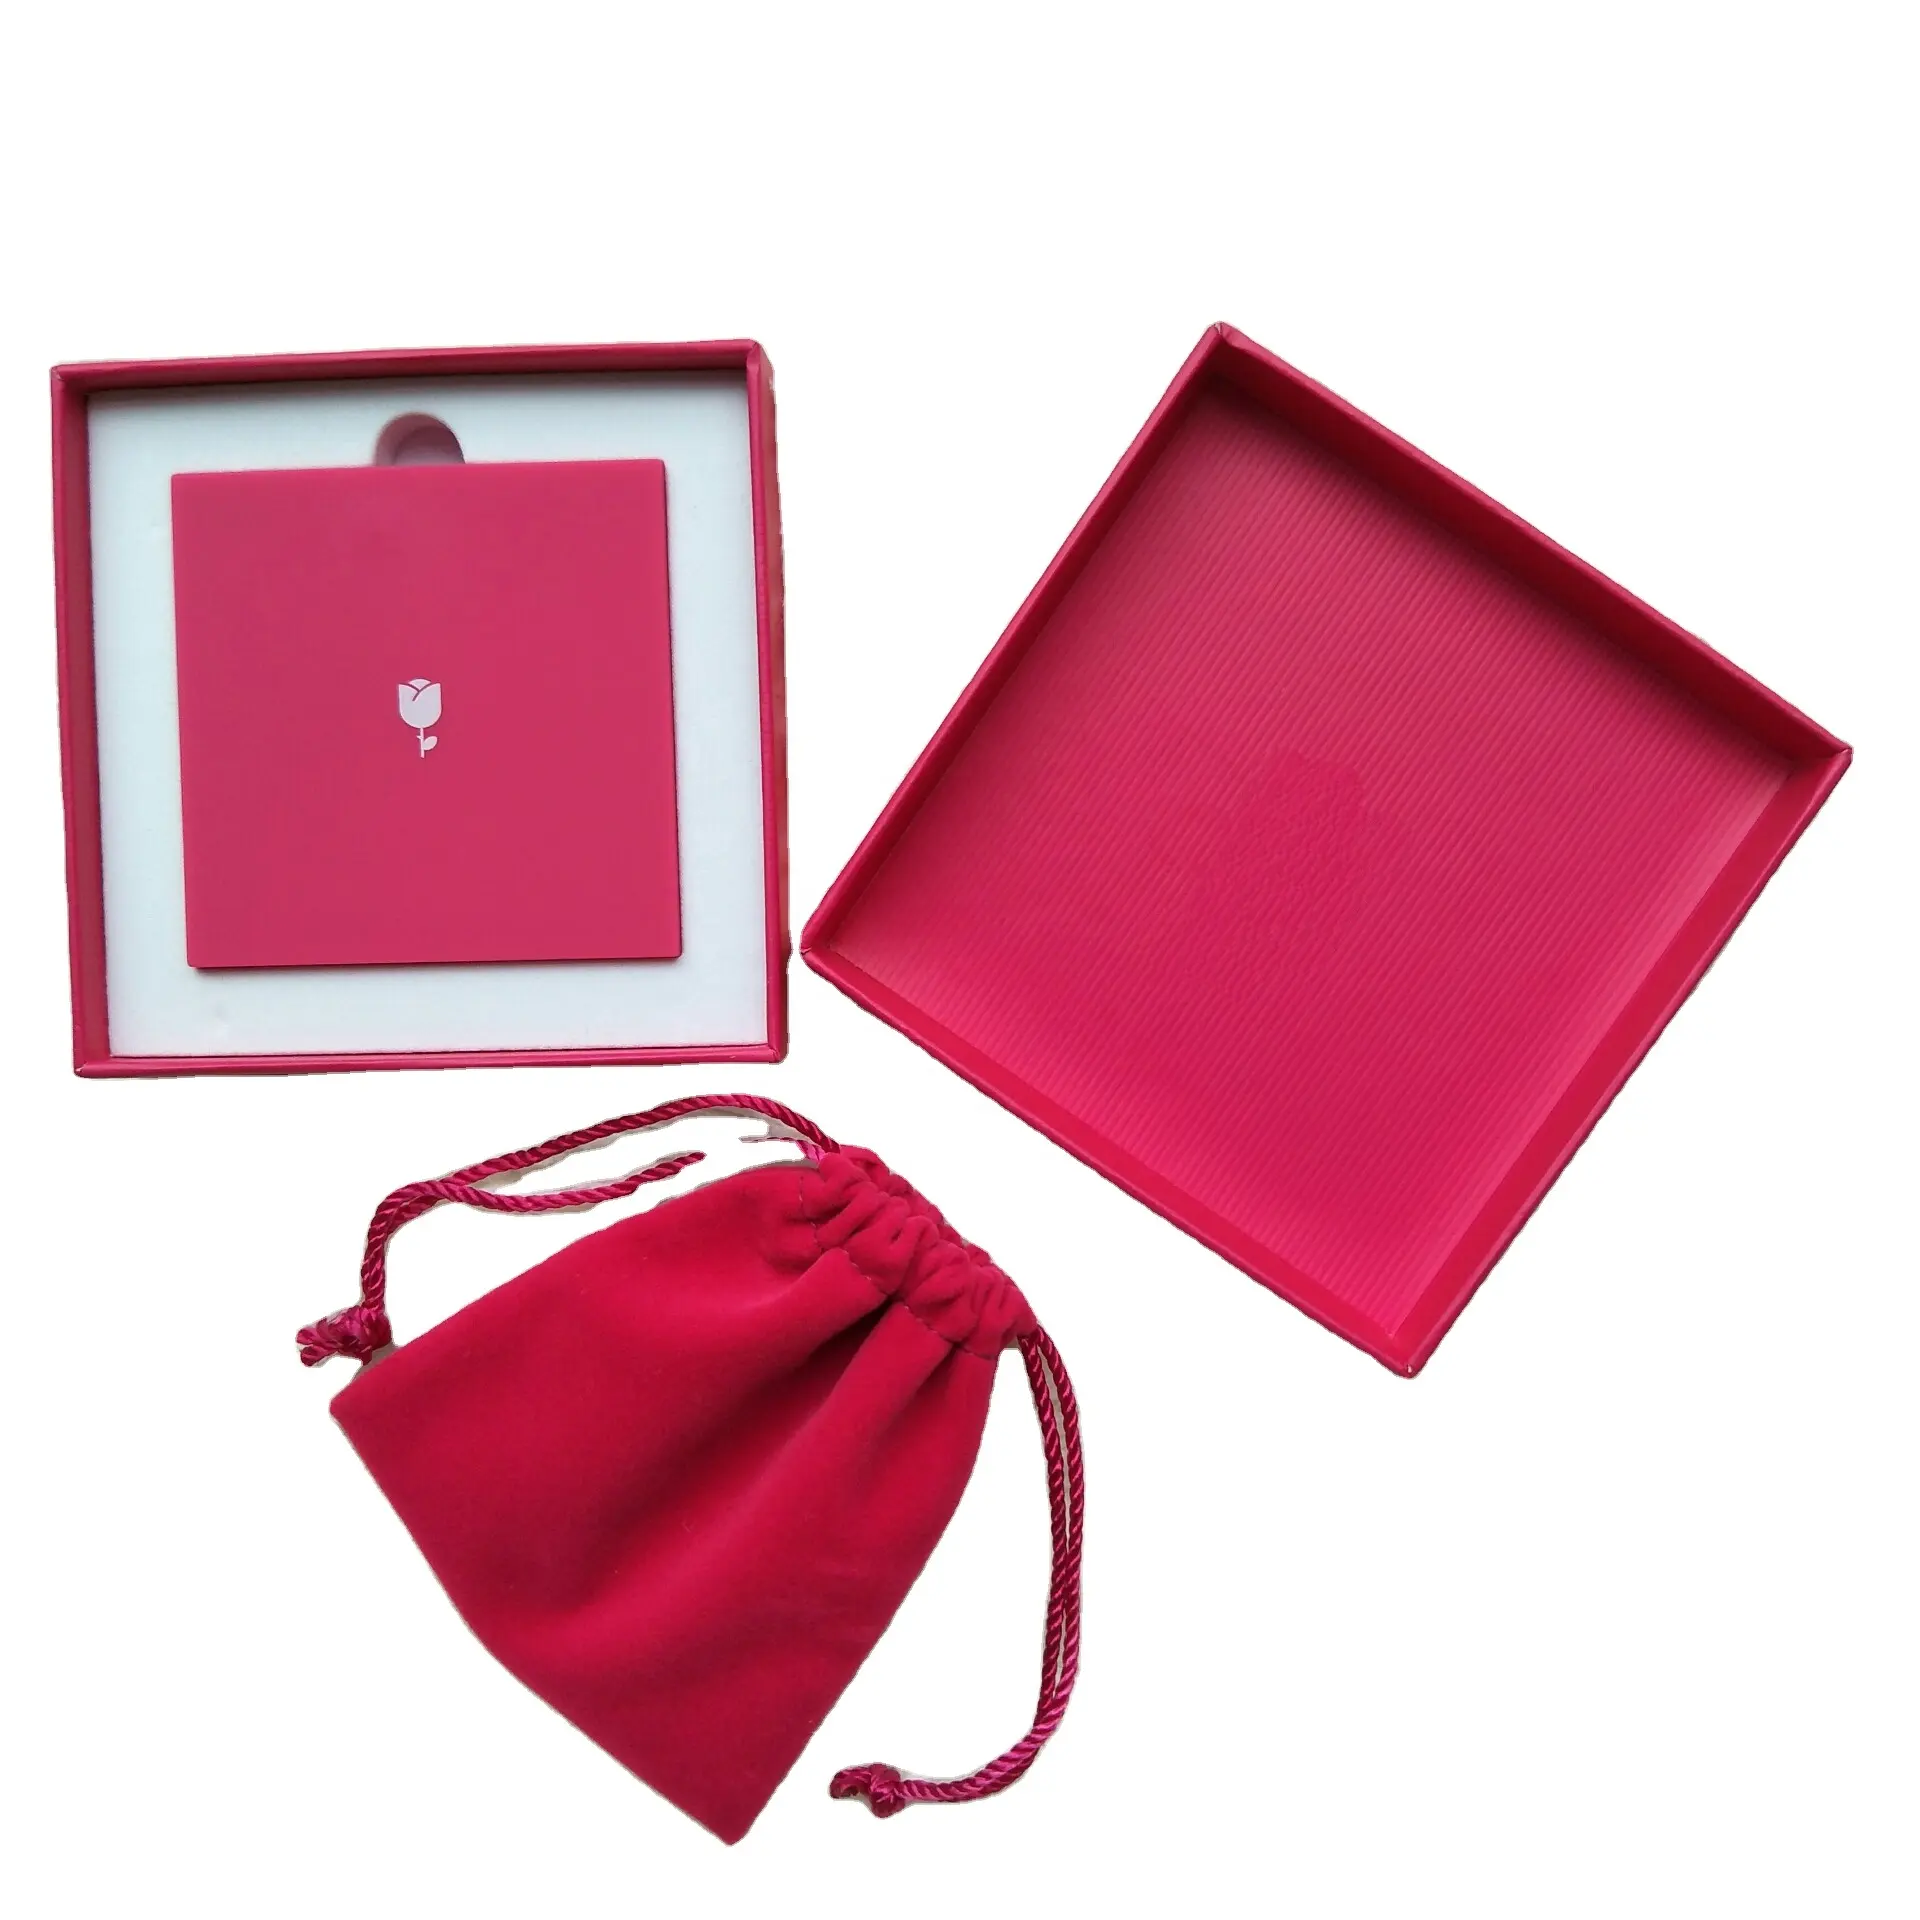 Роскошный красный розовый картон красивая коробка ювелирные изделия ожерелье кольцо упаковка на заказ логотип подарок бумажная коробка ювелирных изделий упаковка ювелирных изделий